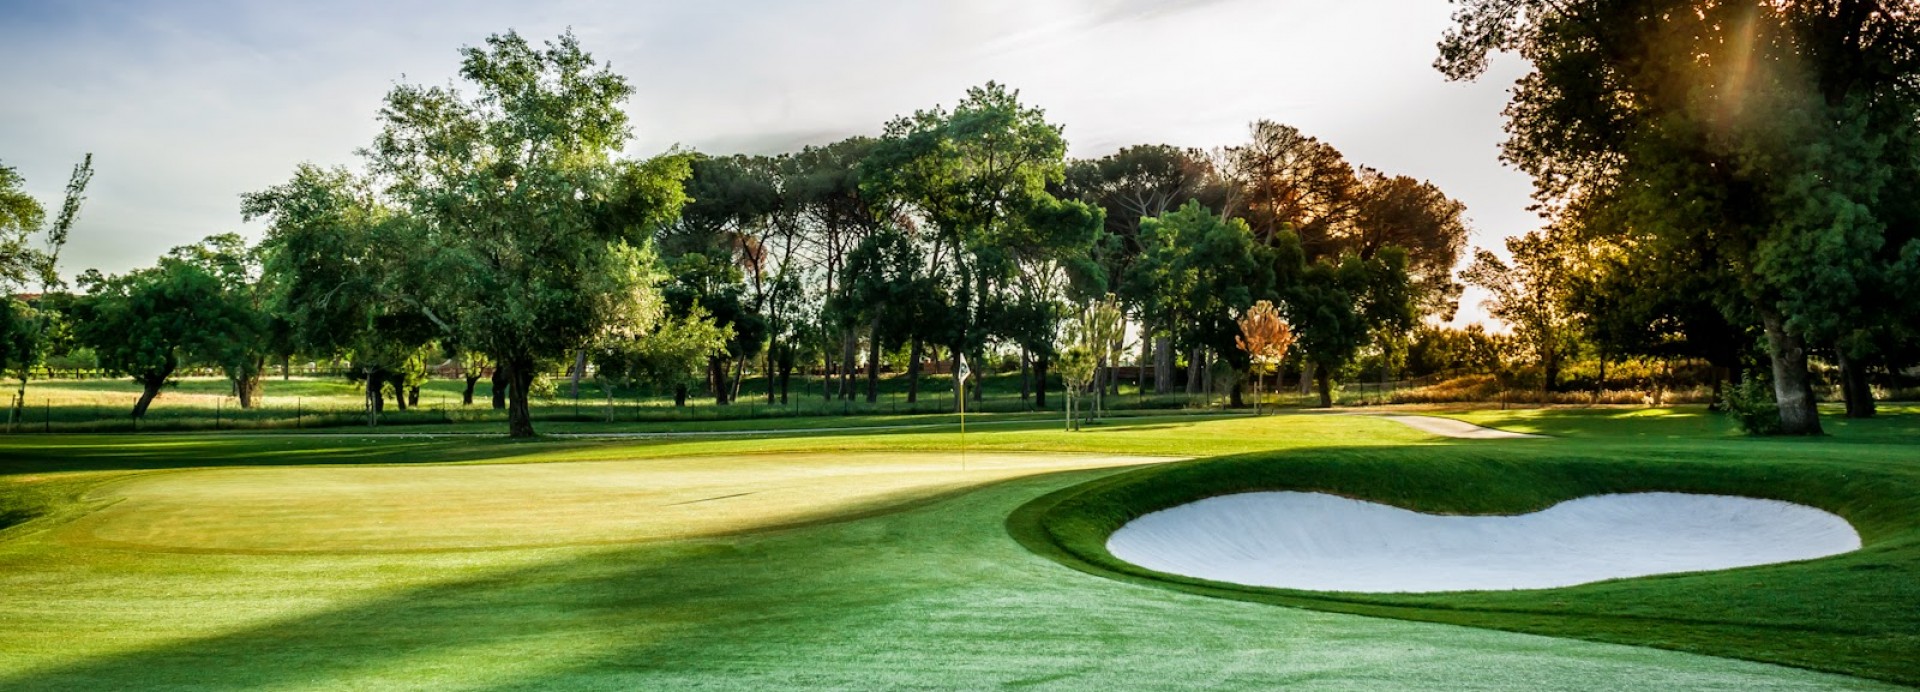 Golf La Moraleja 1  | Golfové zájezdy, golfová dovolená, luxusní golf